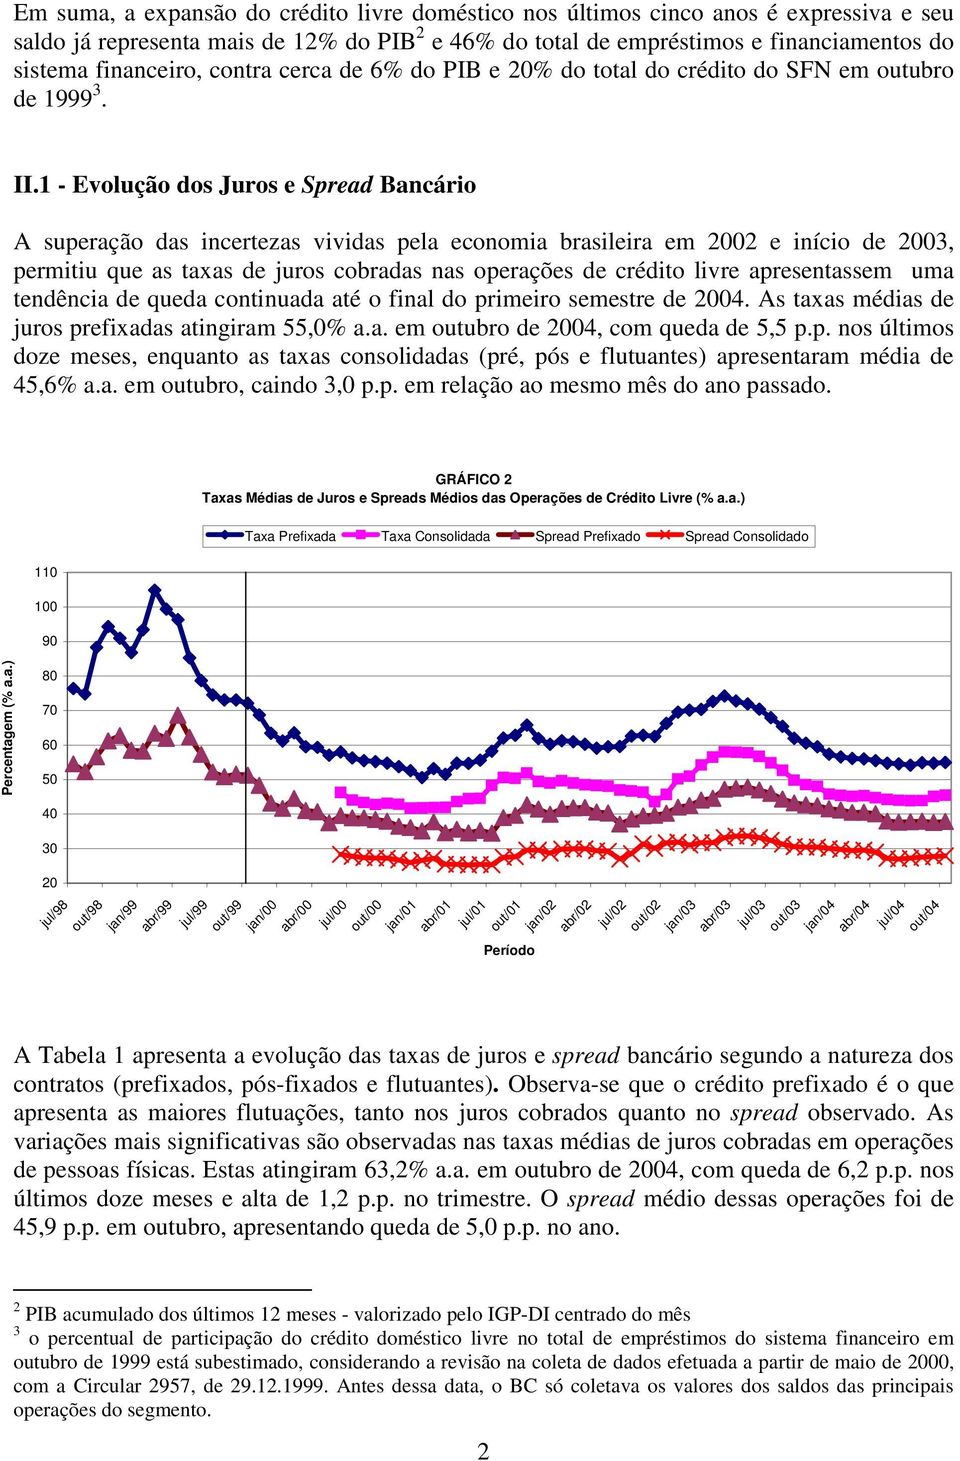 1 - Evolução dos Juros e Spread Bancário A superação das incertezas vividas pela economia brasileira em 2002 e início de 2003, permitiu que as taxas de juros cobradas nas operações de crédito livre